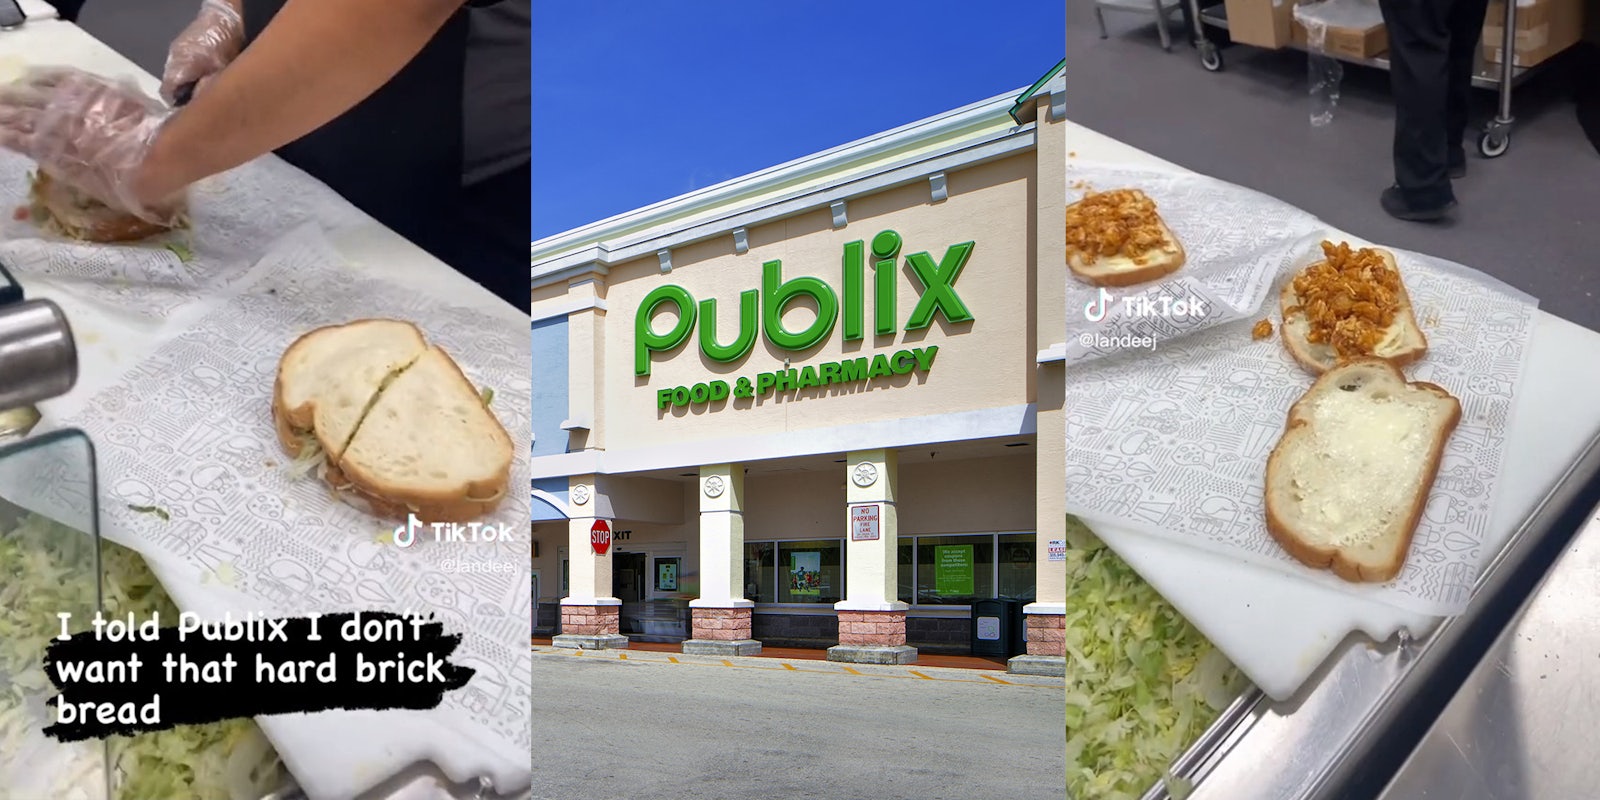 Publix customer asks for new bread at publix